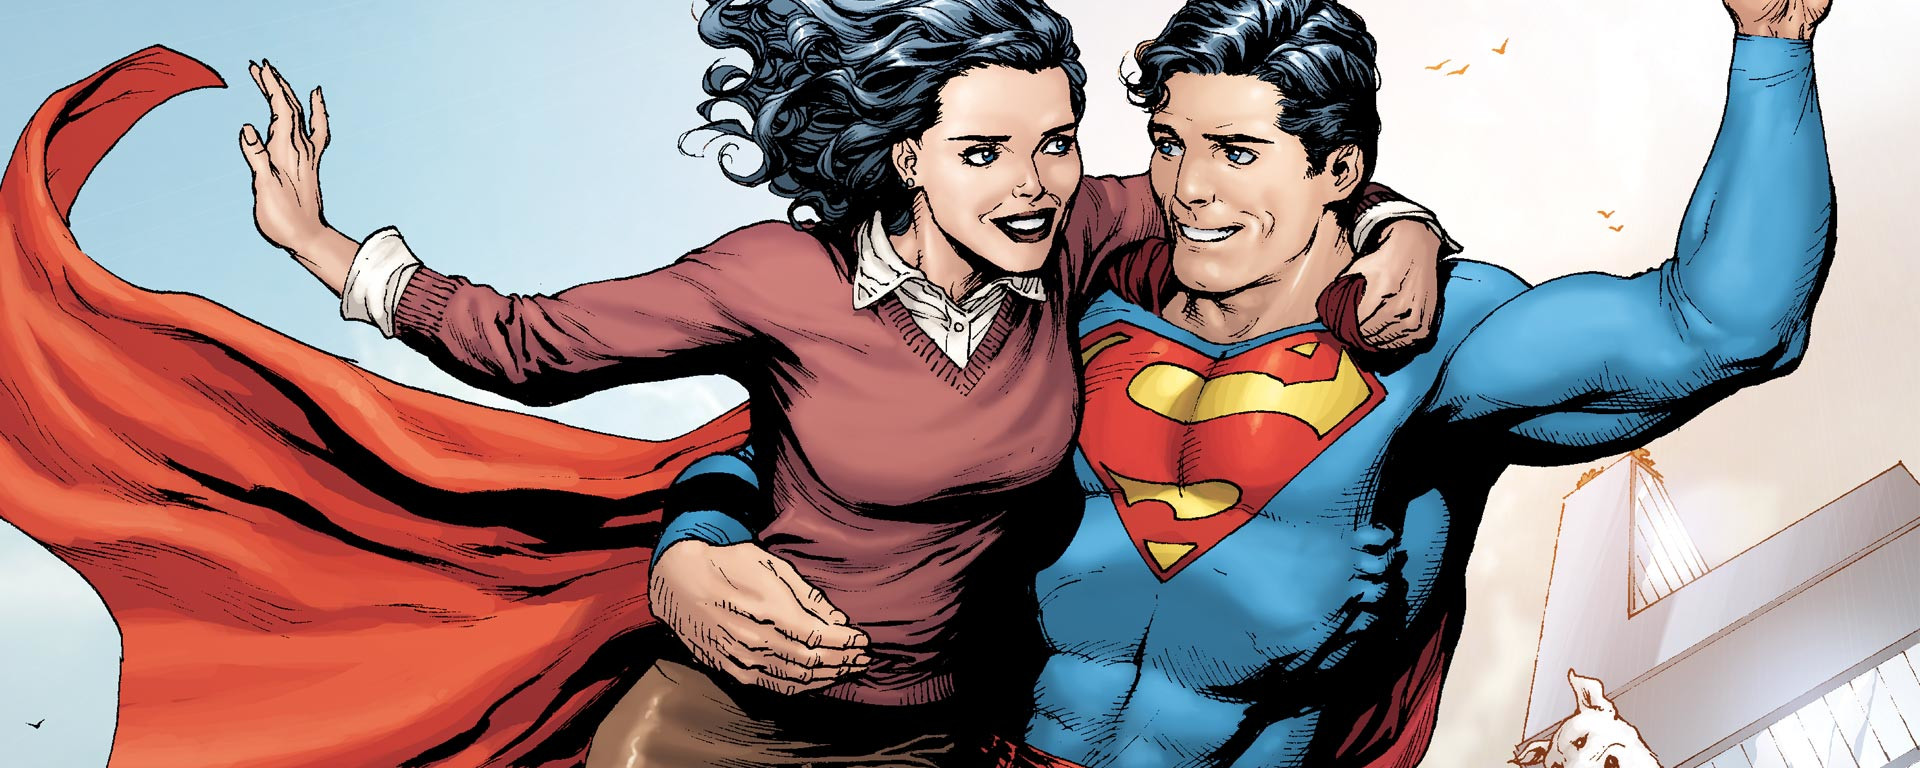 amy shouse recommends Superman Fucks Lois Lane